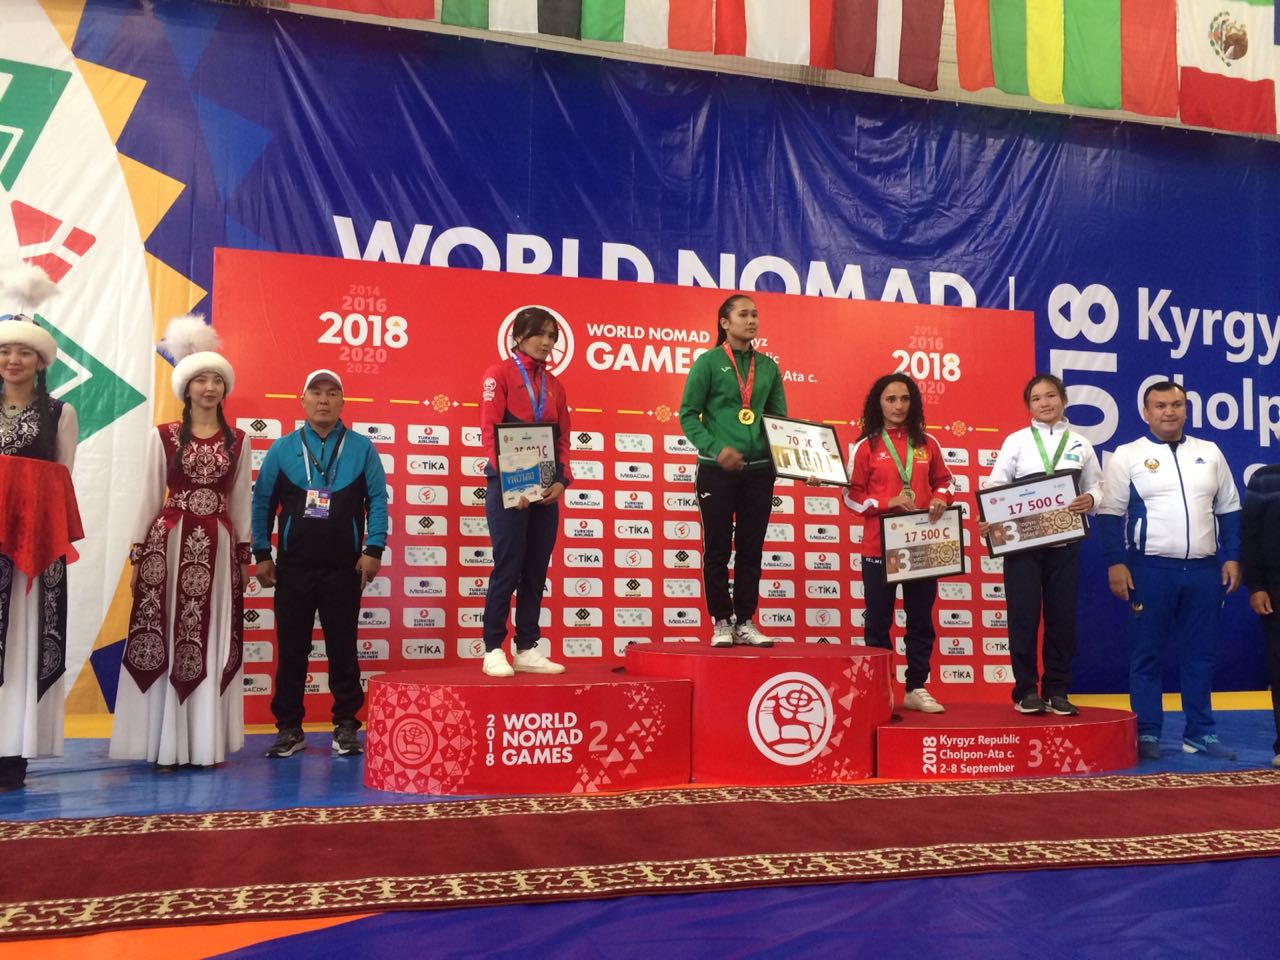 В национальной борьбе кыргызов казахстанские спортсмены выиграли две серебряные и три бронзовые медали